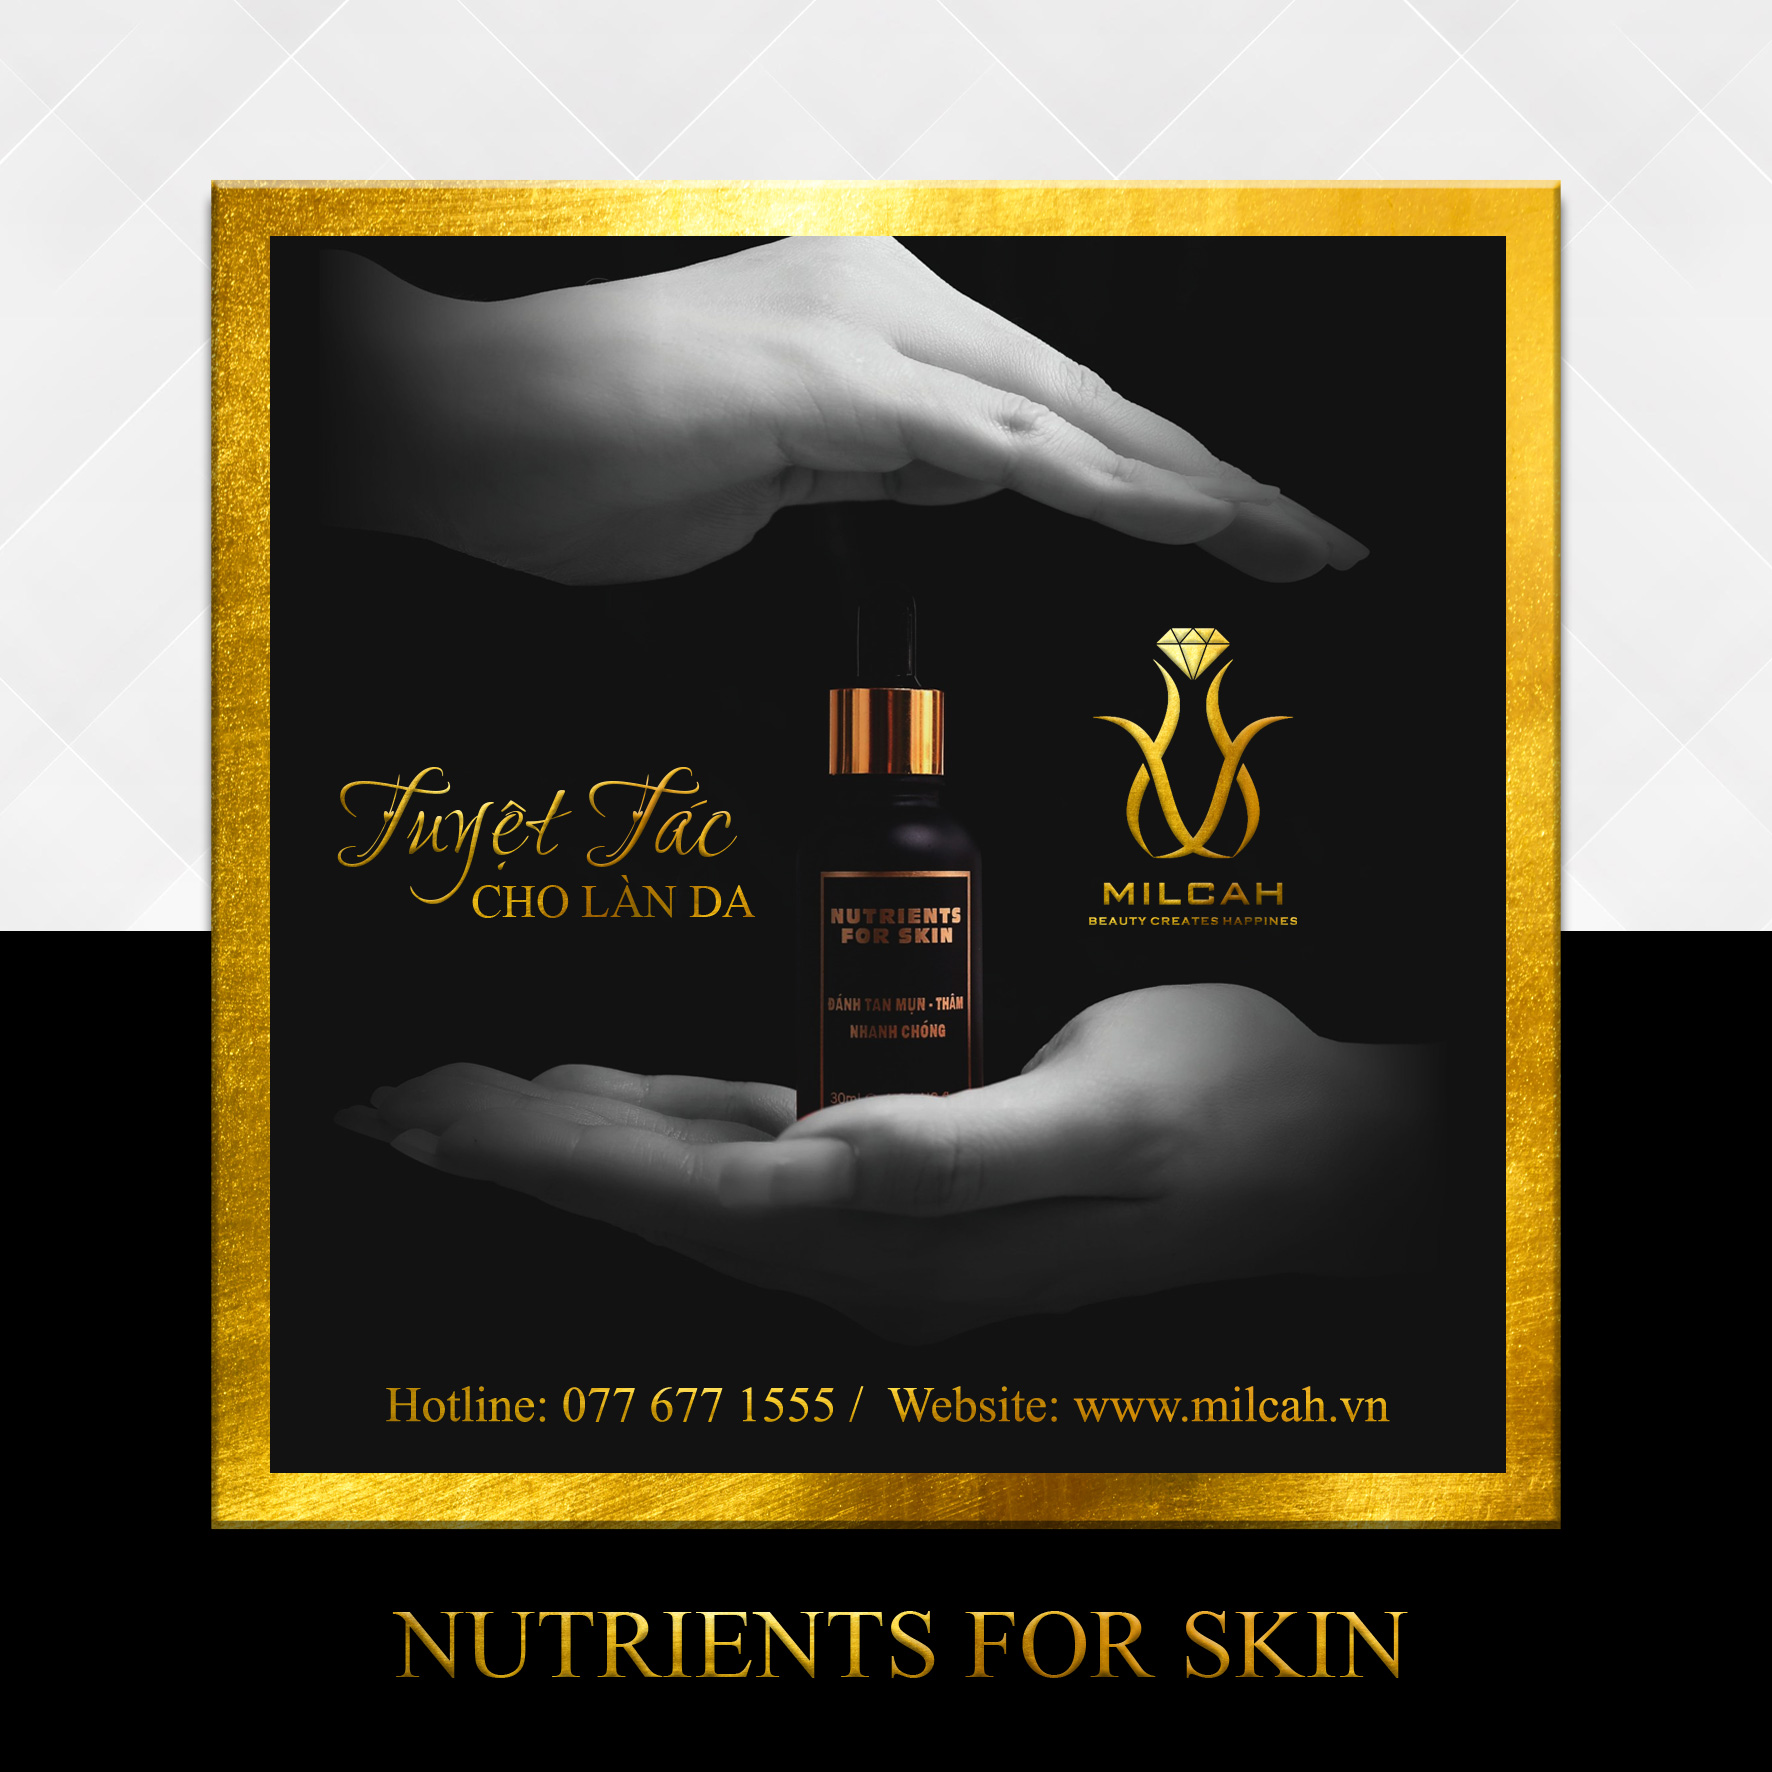 Nutrients for Skin - Sạch mụn, sáng da từ thiên nhiên